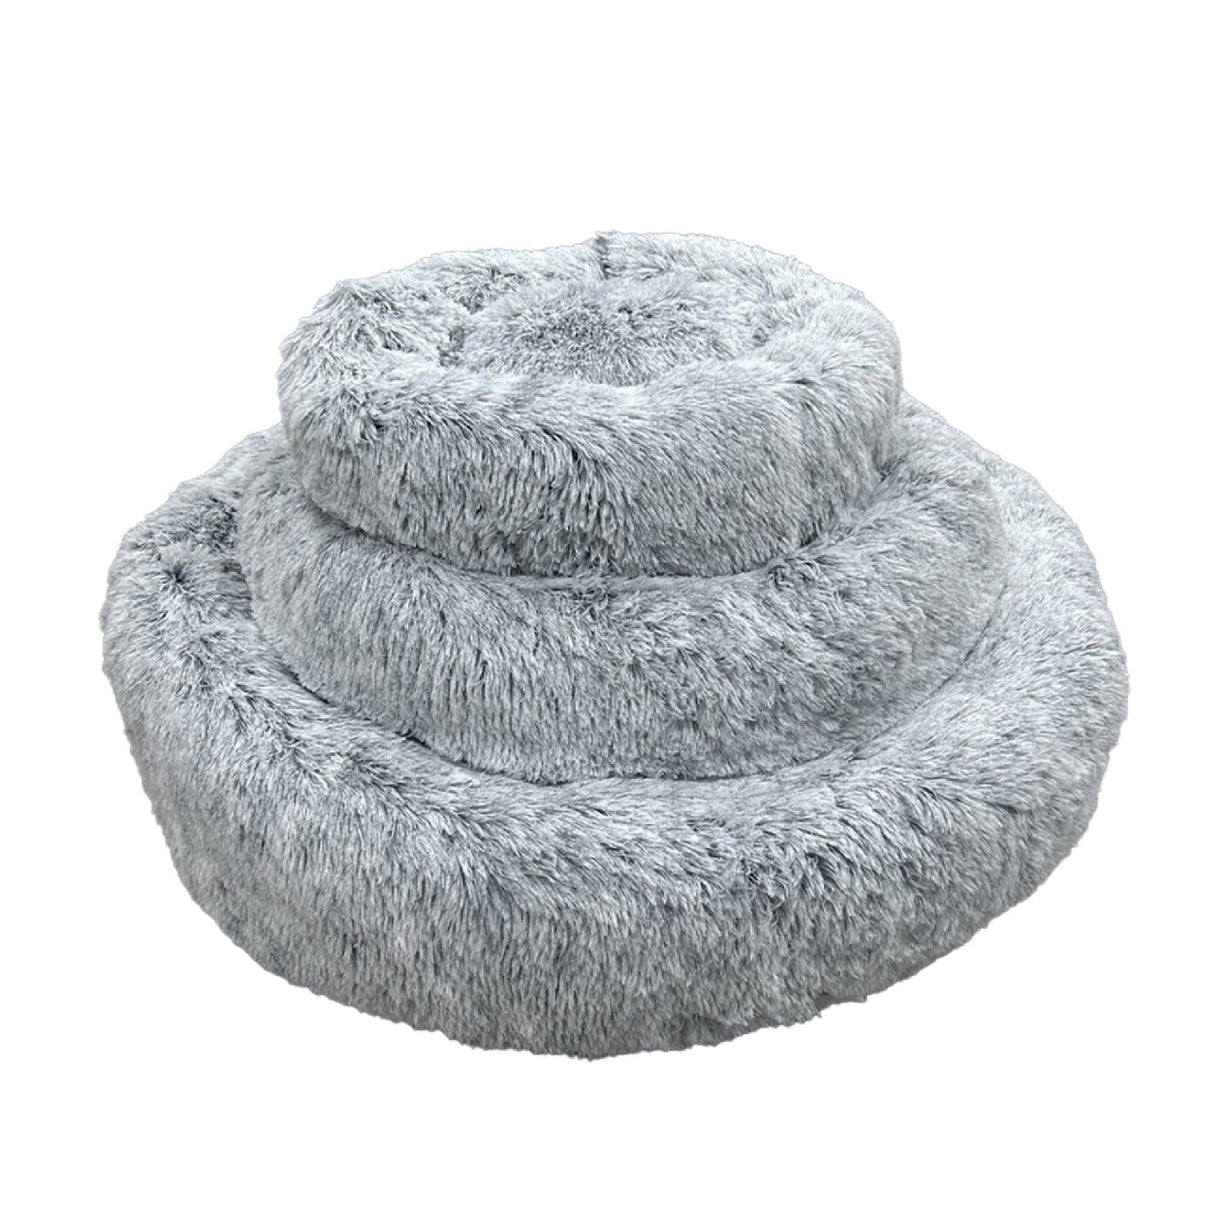 Ancol Super Soft Plush Donut Dog Bed, Ancol, L 100cm